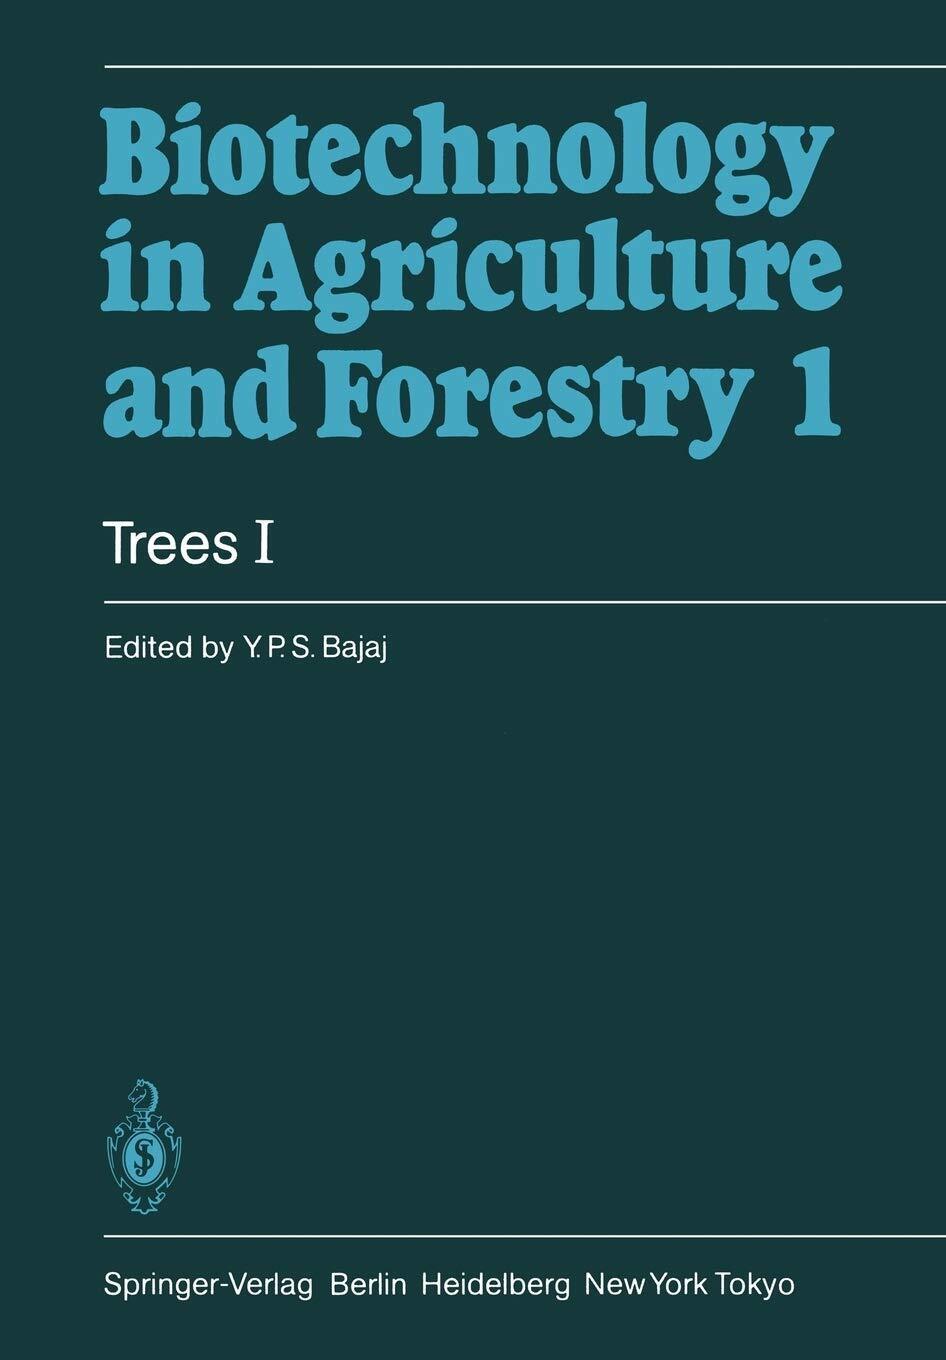 Trees I - Y. P. S. Bajaj - Springer, 2011